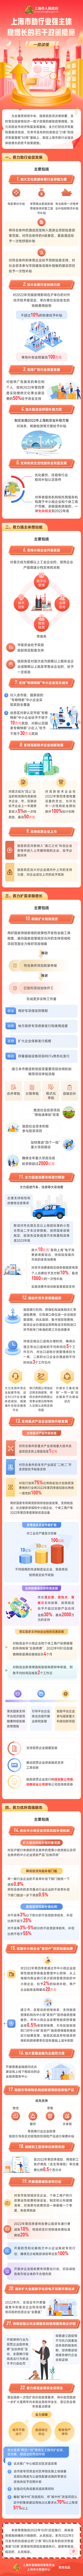 上海市人民政府关于印发《上海市助行业强主体稳增长的若干政策措施》的通知.png